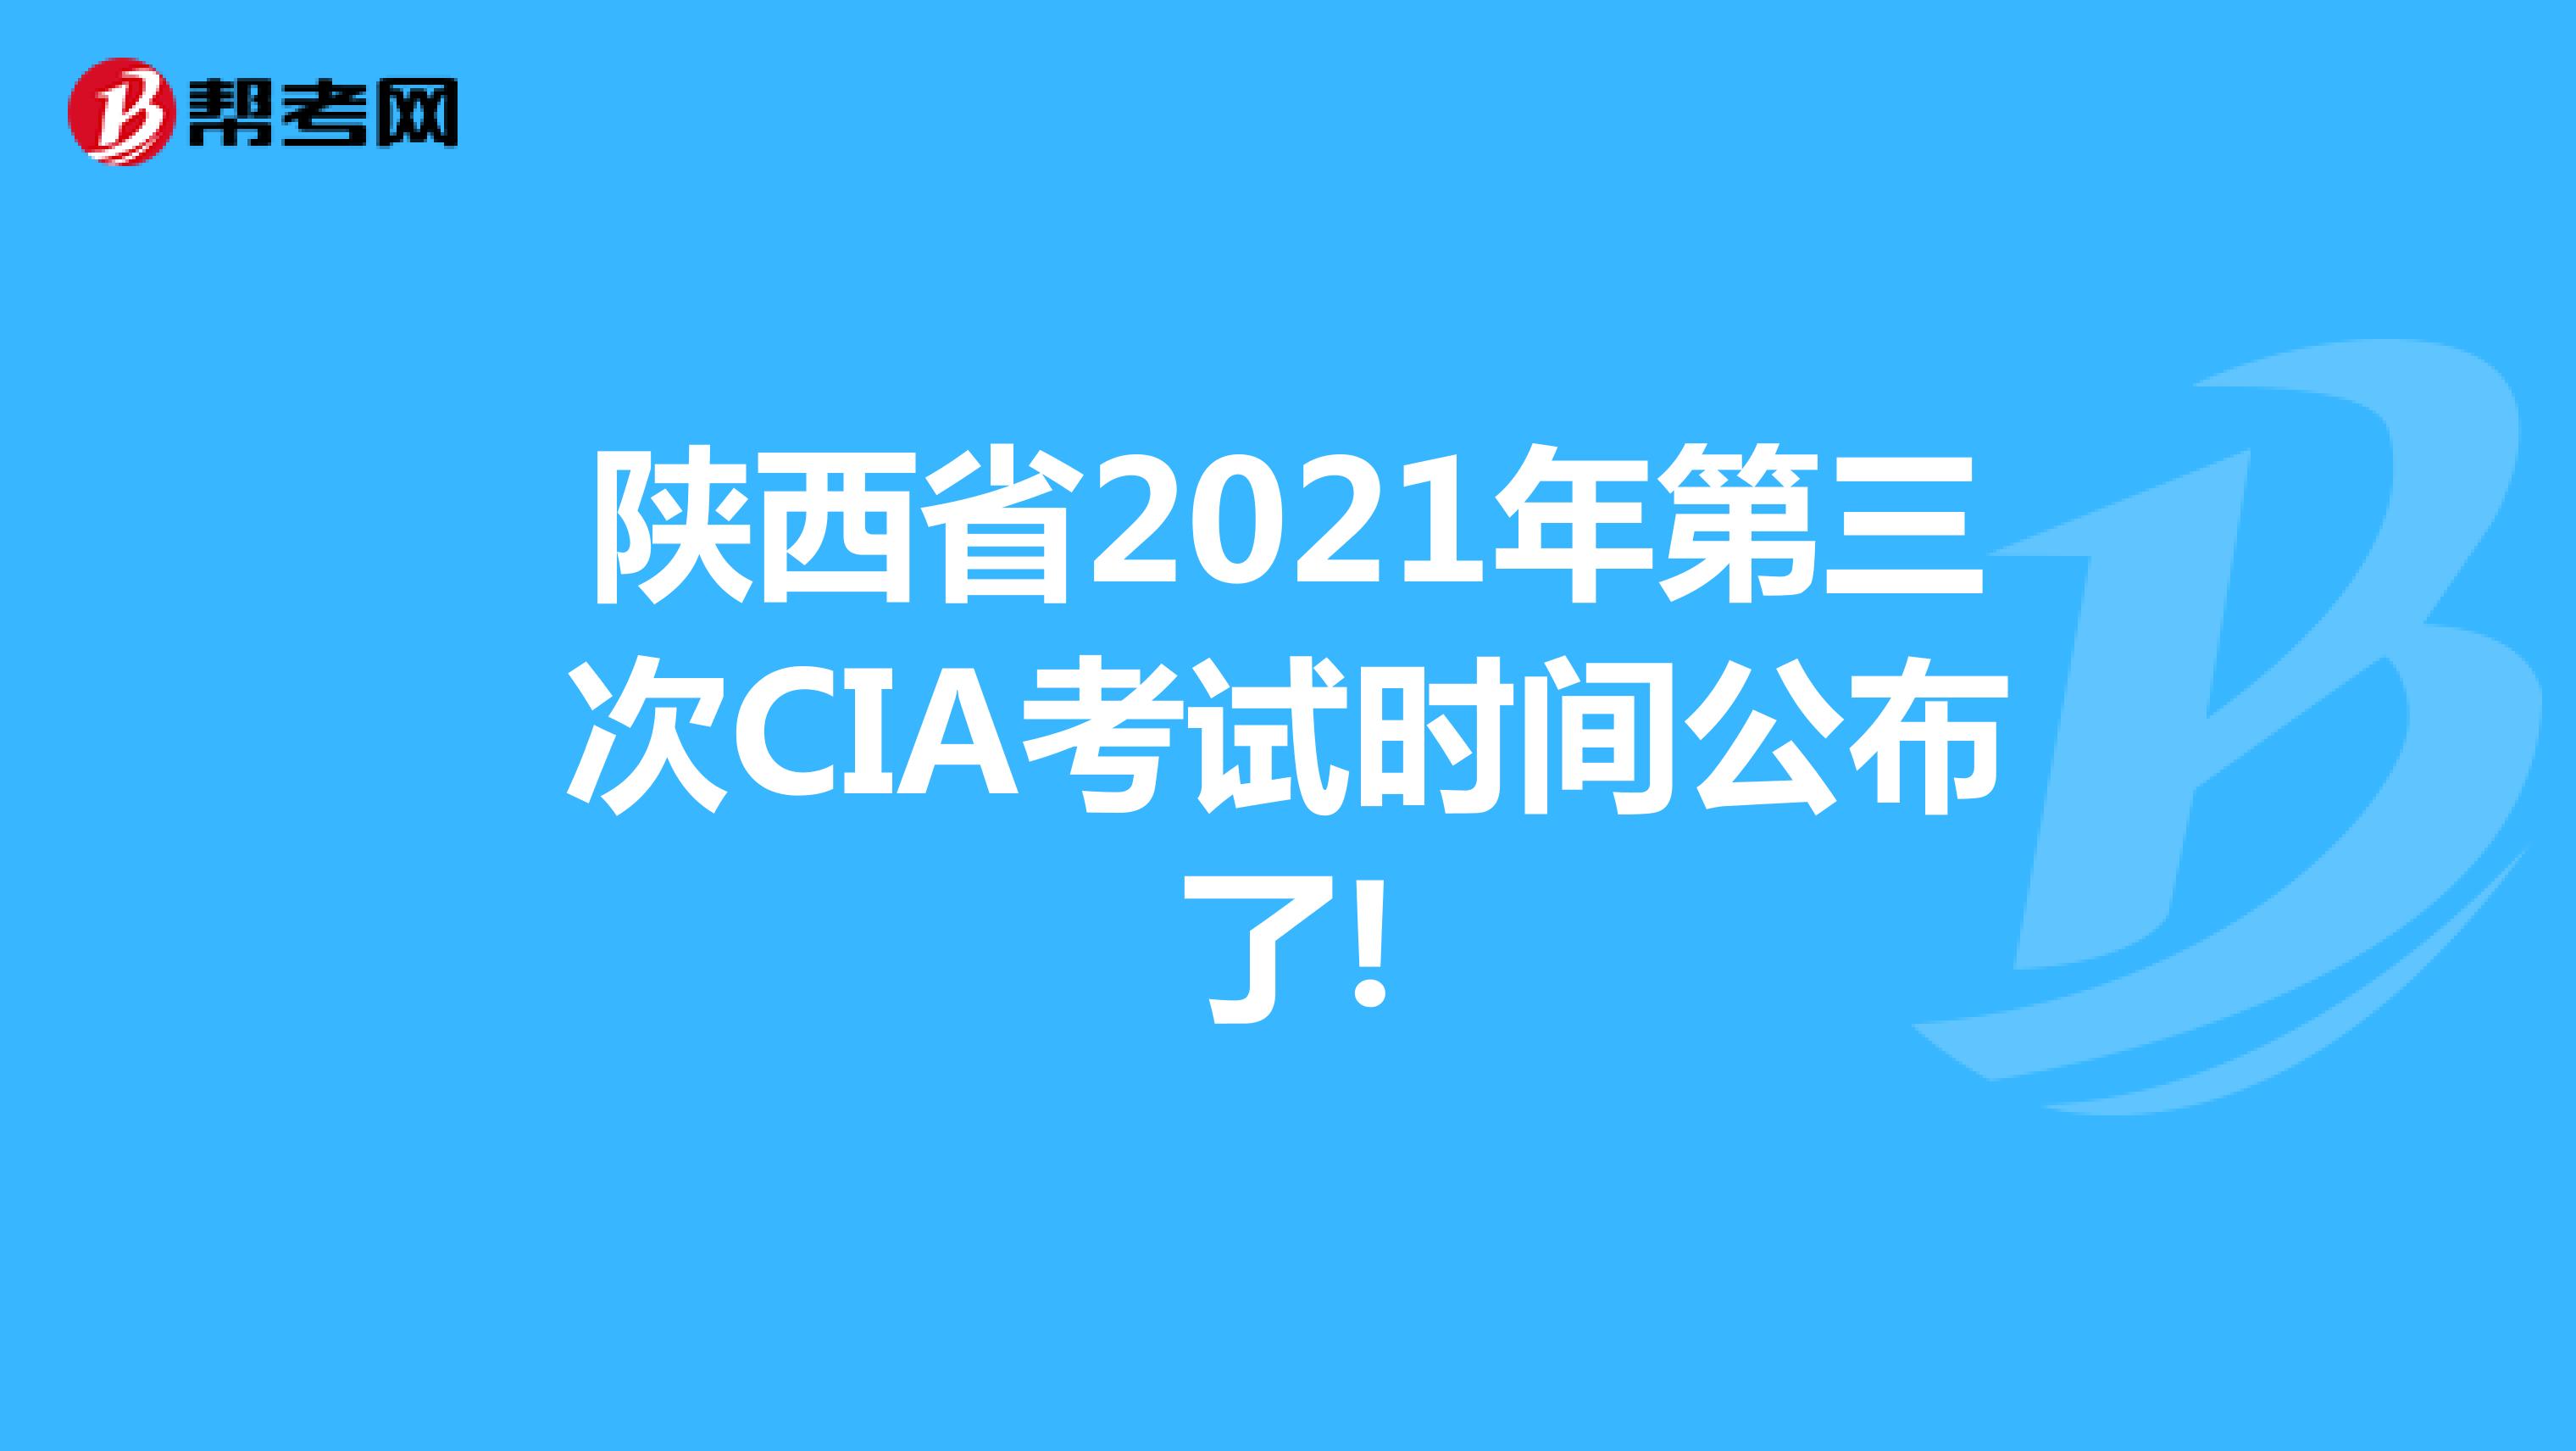 陕西省2021年第三次CIA考试时间公布了!